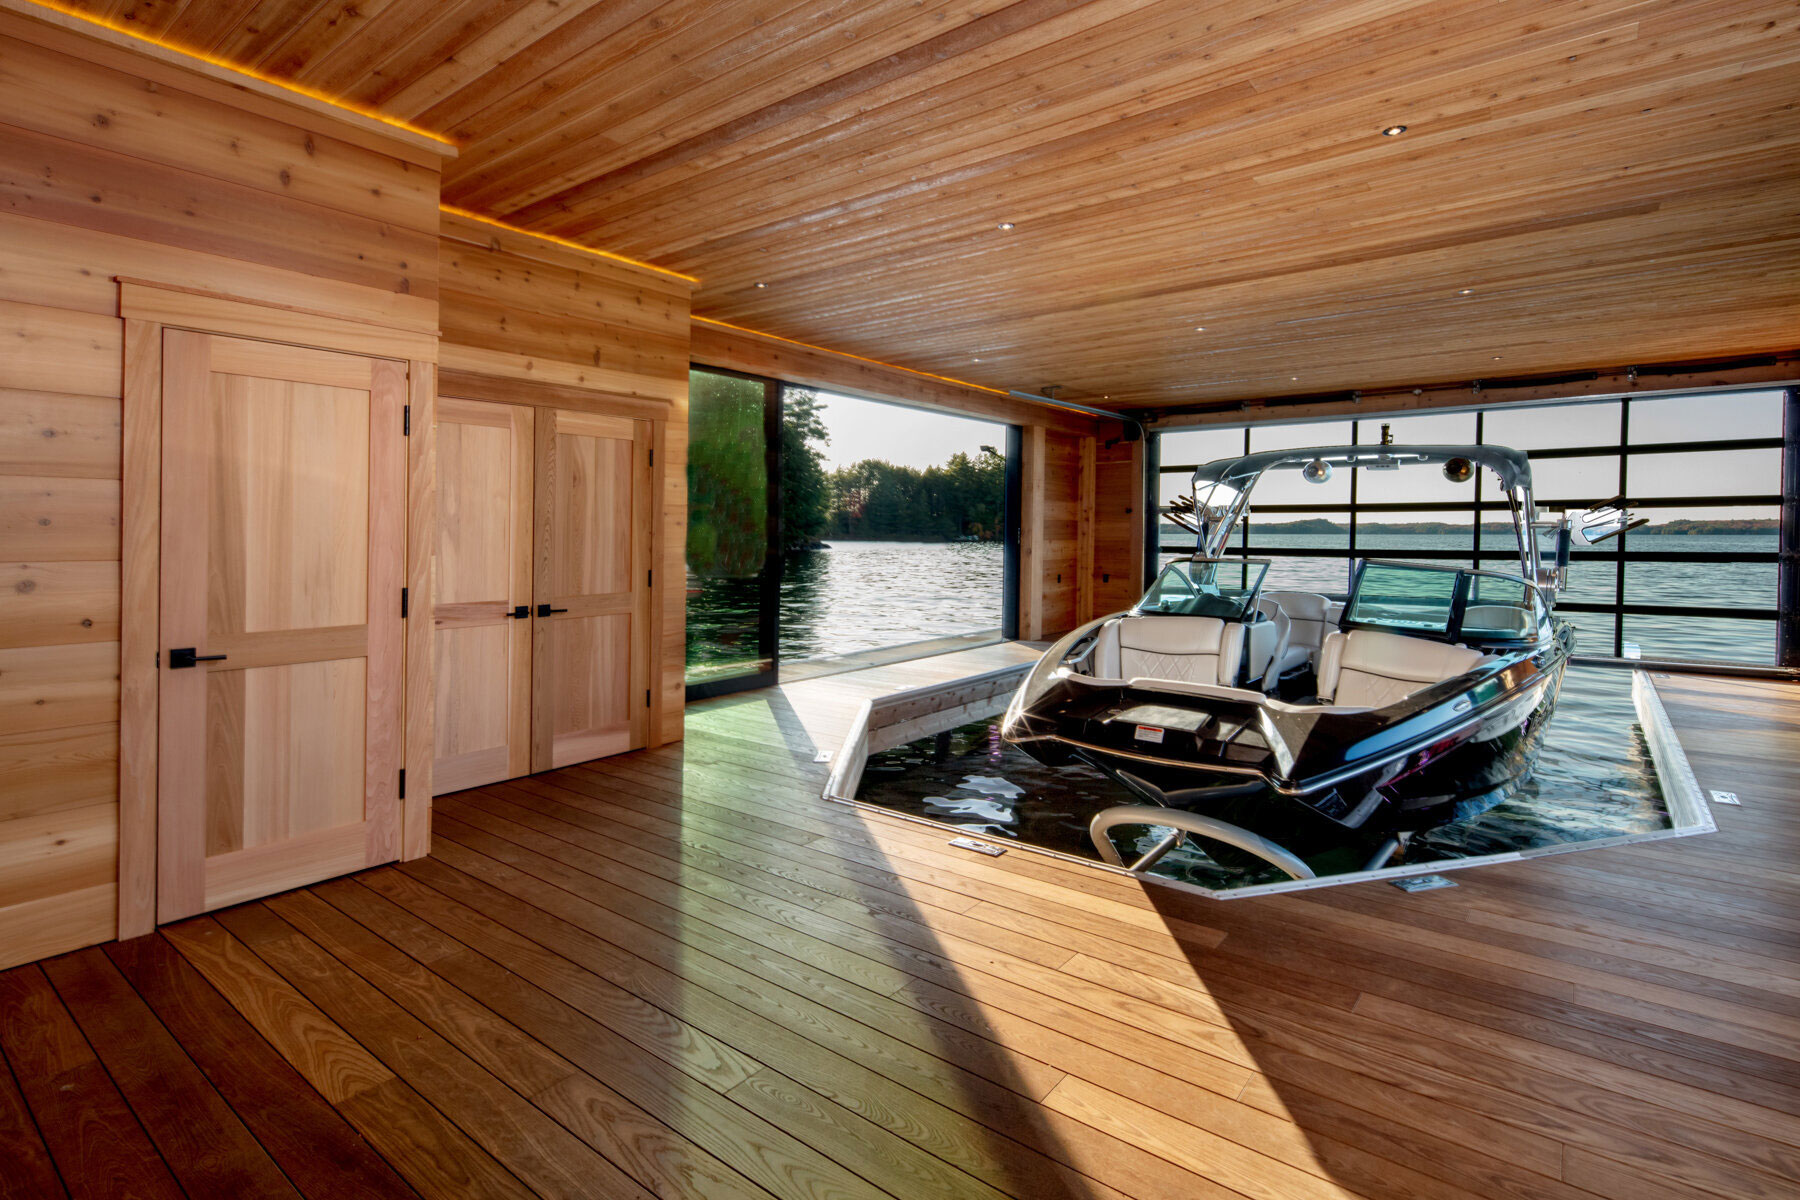 Wood-paneled boathouse with boat docked inside, custom boathouse in Muskoka